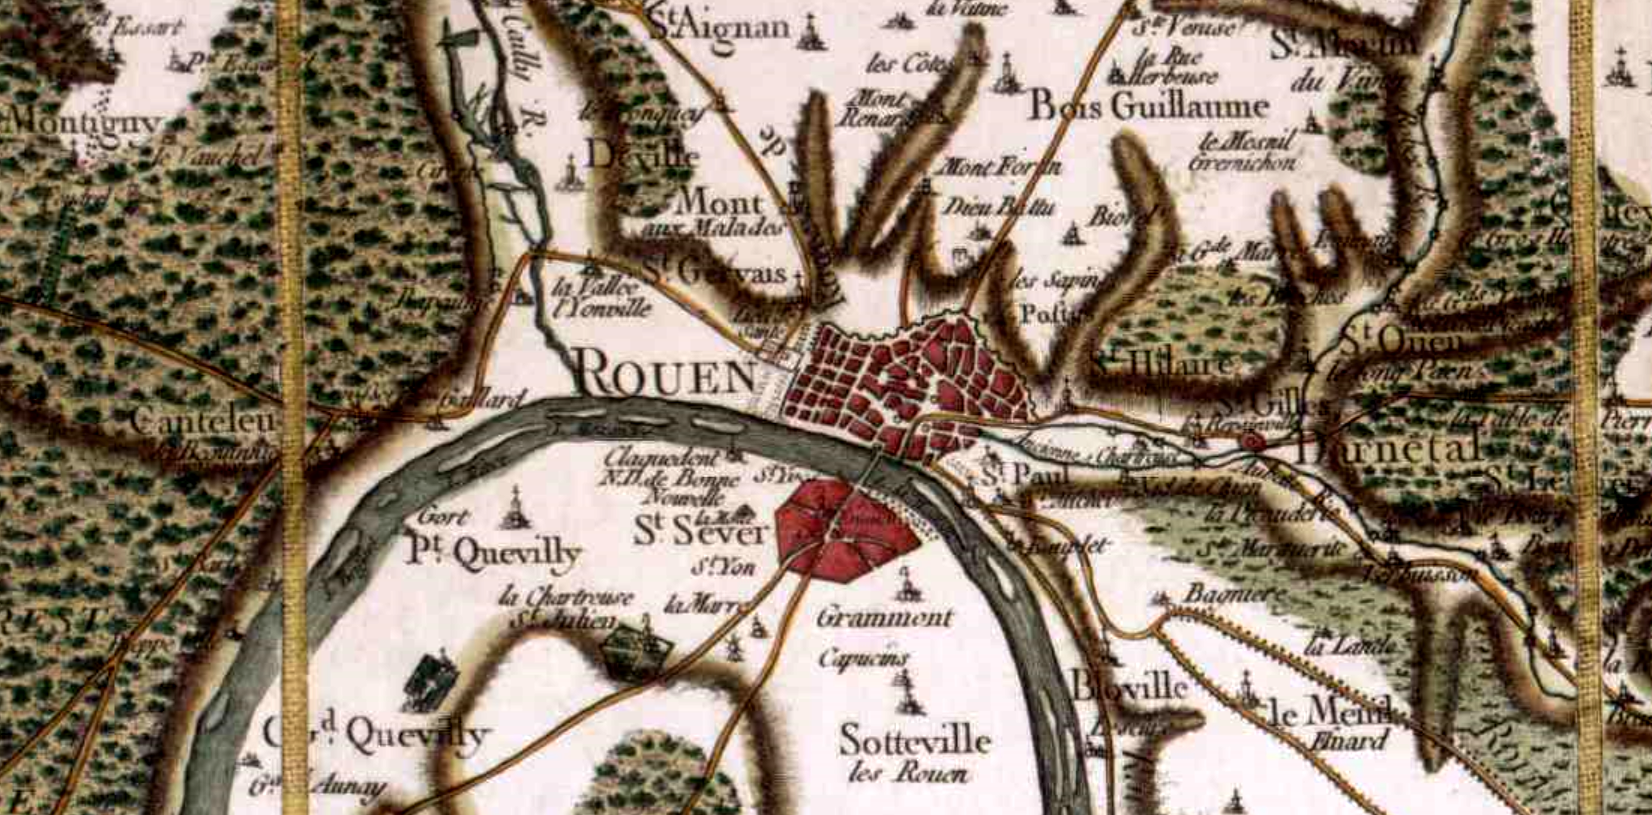 Rouen seine maritime cassini